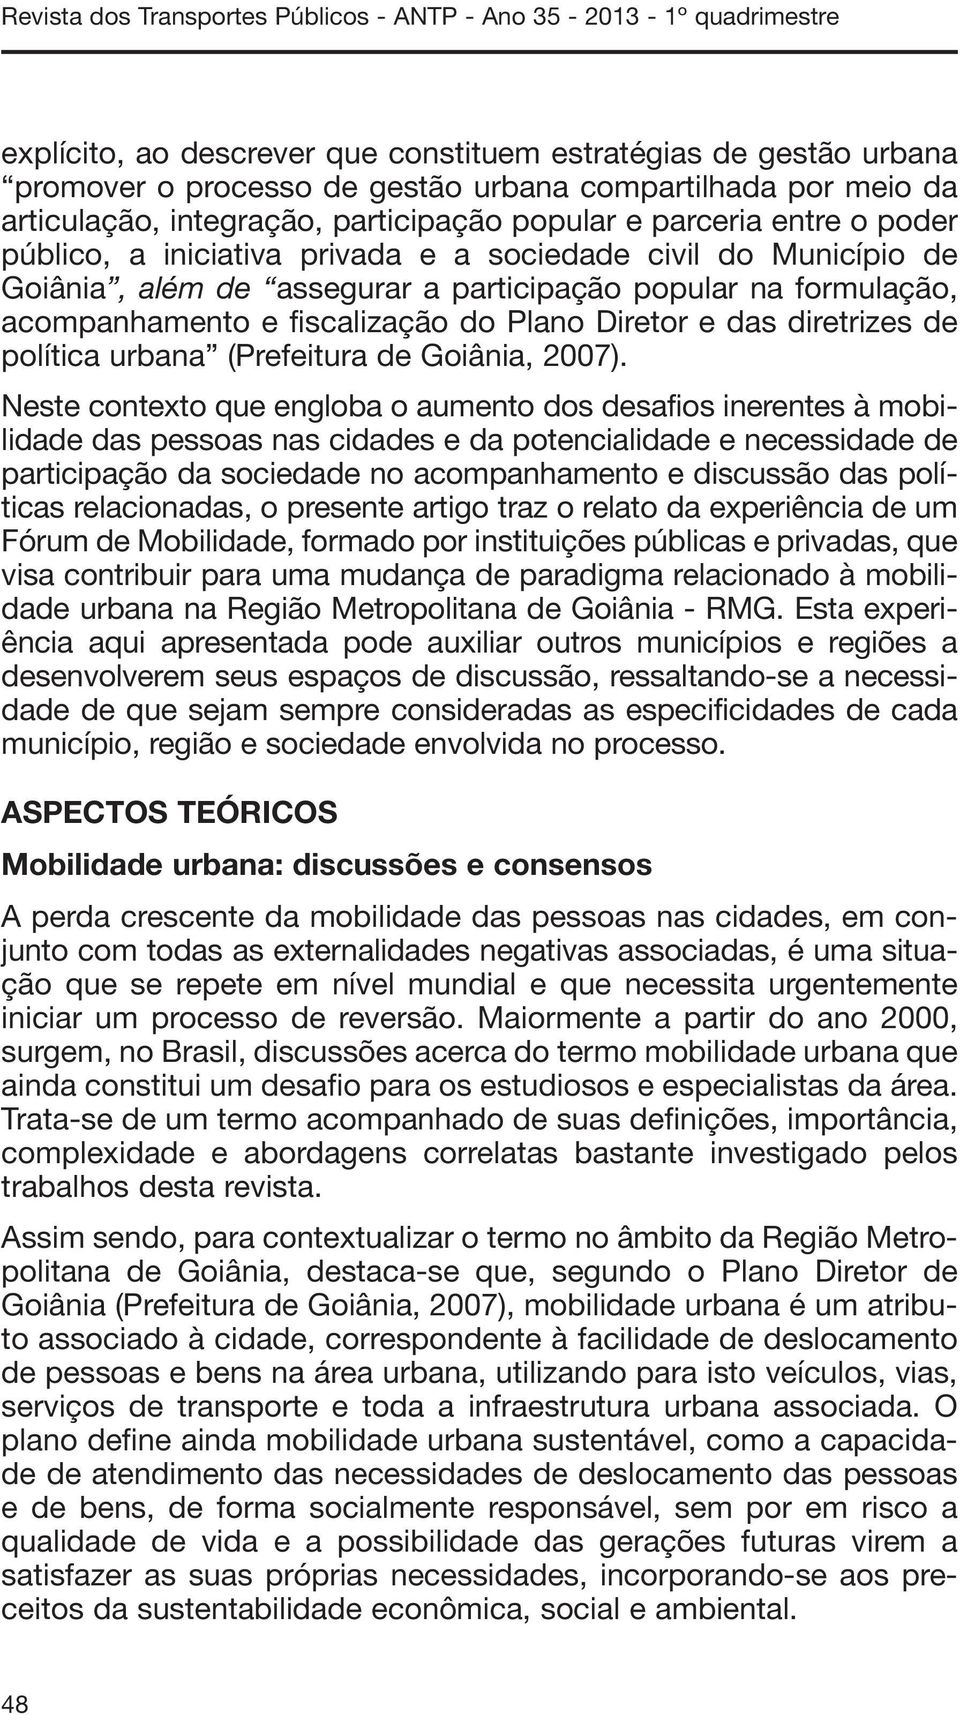 formulação, acompanhamento e fiscalização do Plano Diretor e das diretrizes de política urbana (Prefeitura de Goiânia, 2007).